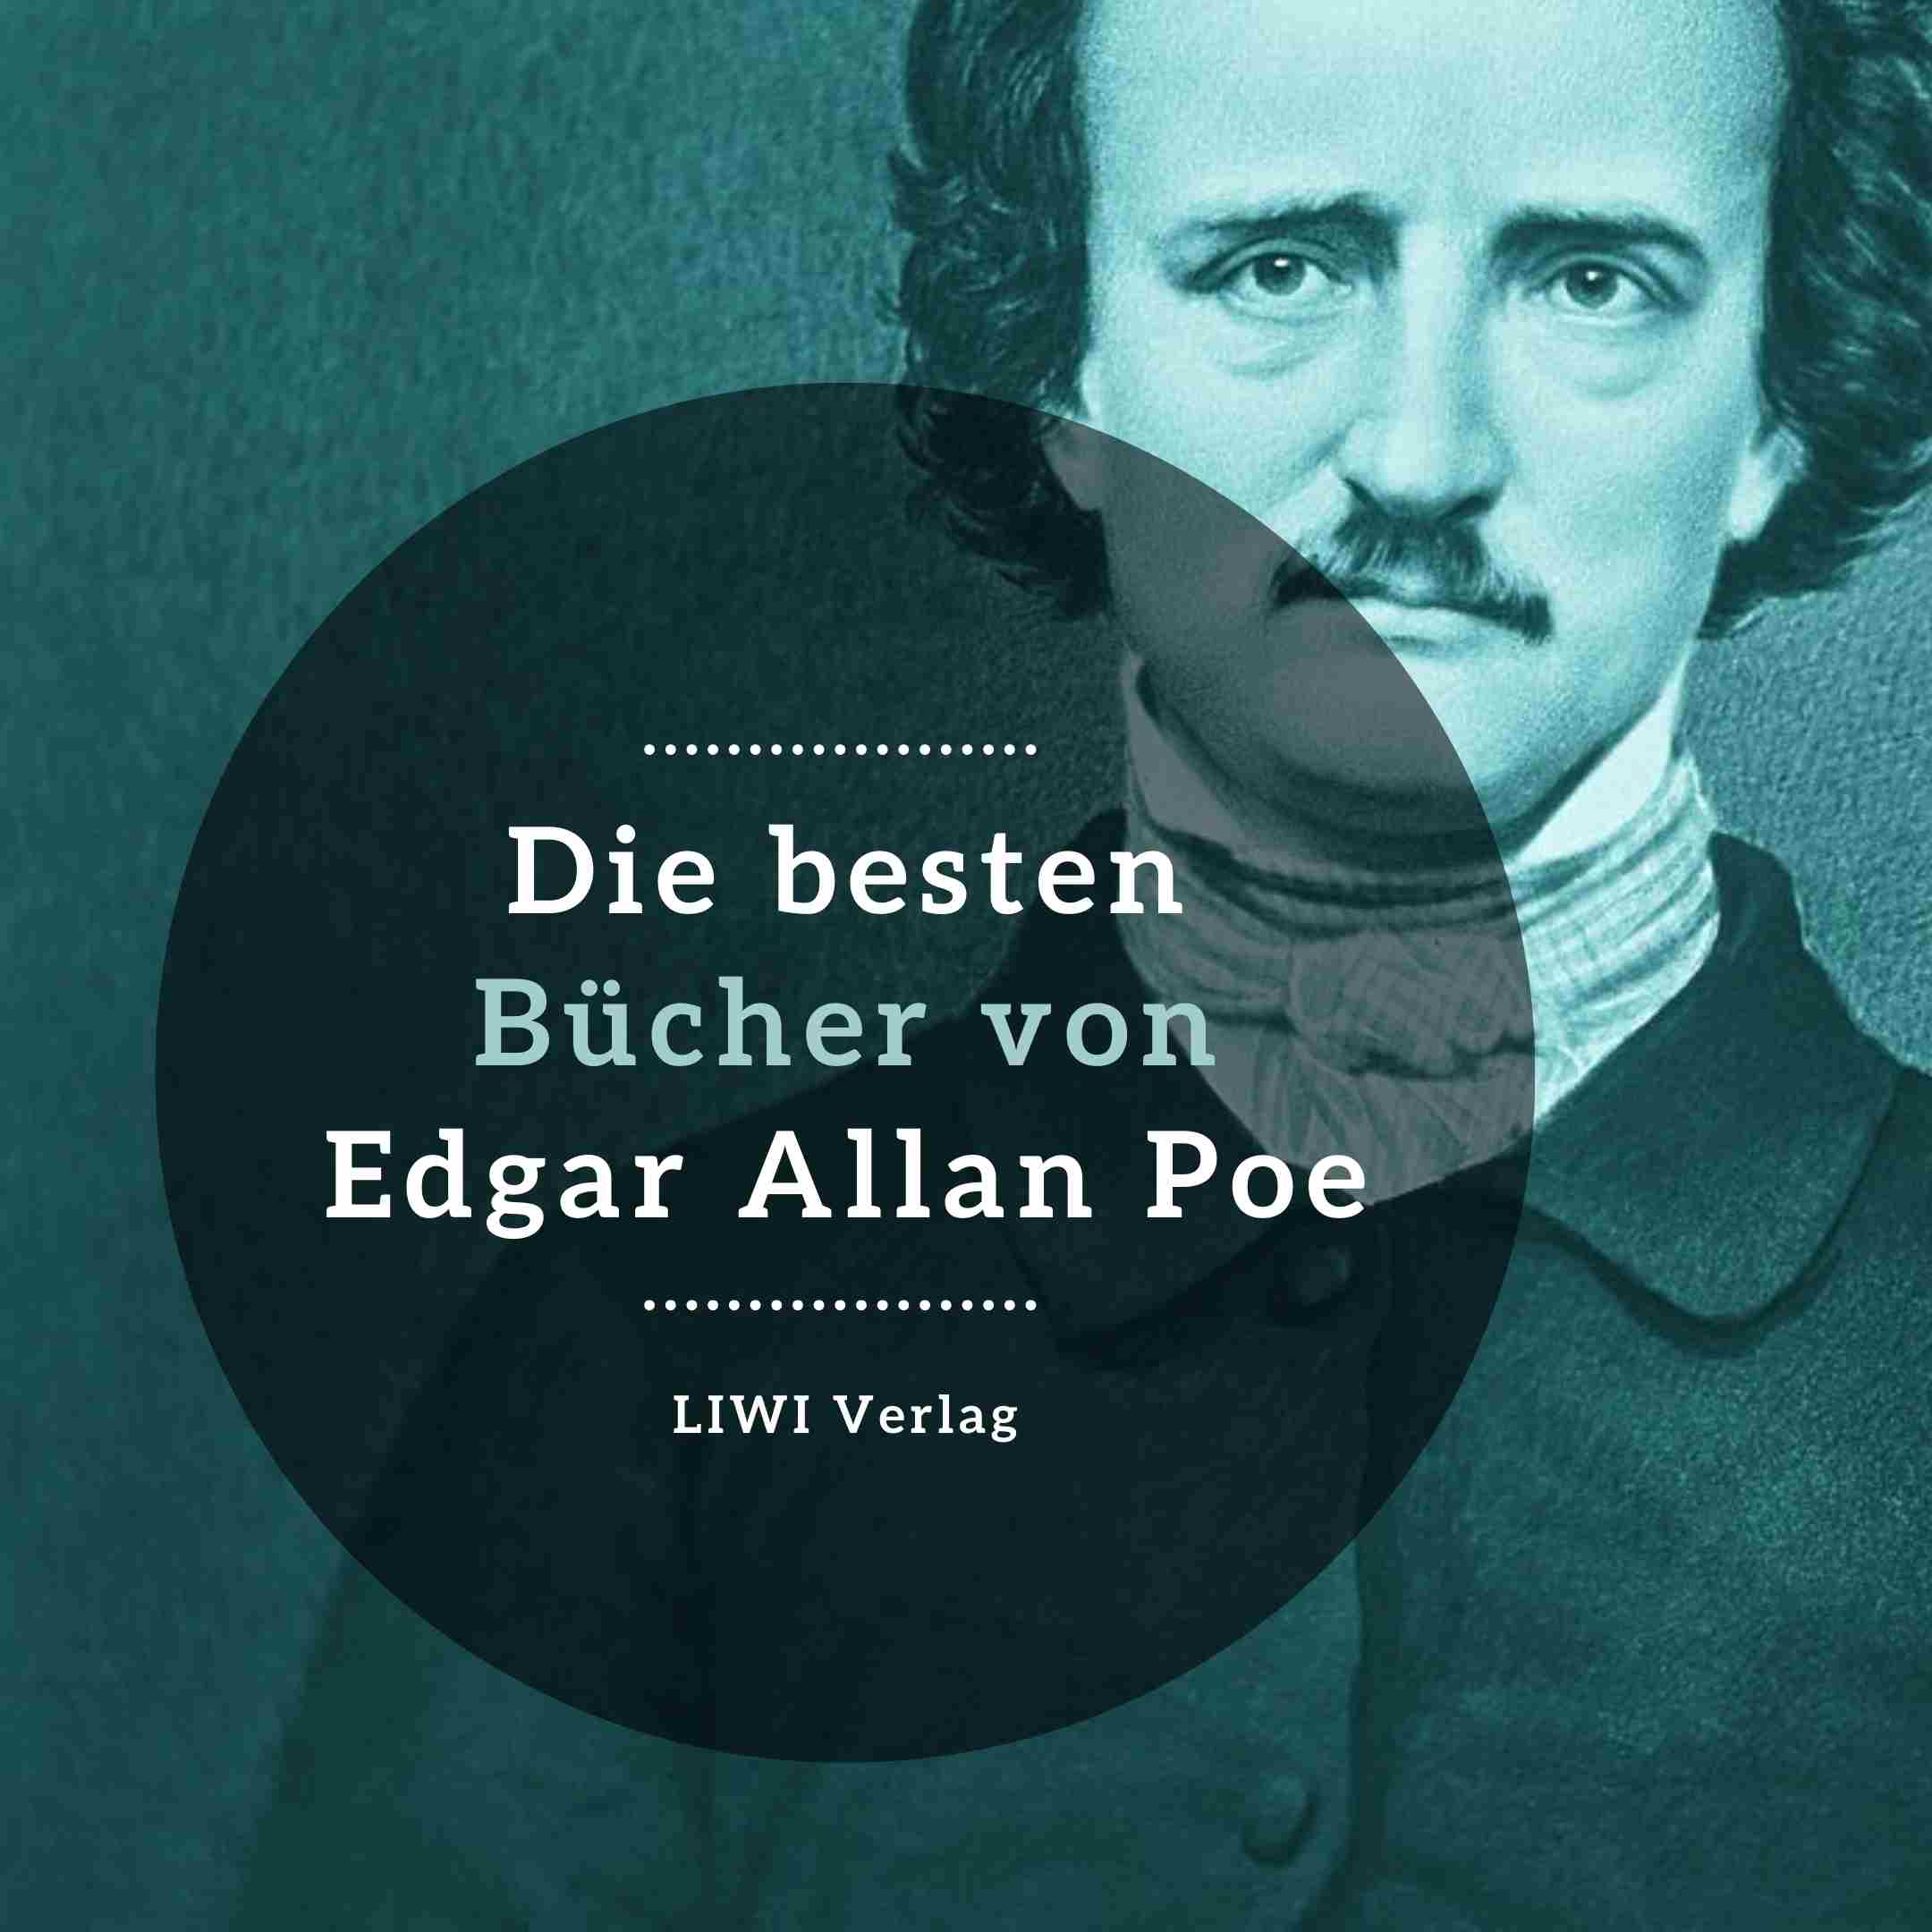 Die besten Bücher edgar allan poe LIWI Verlag